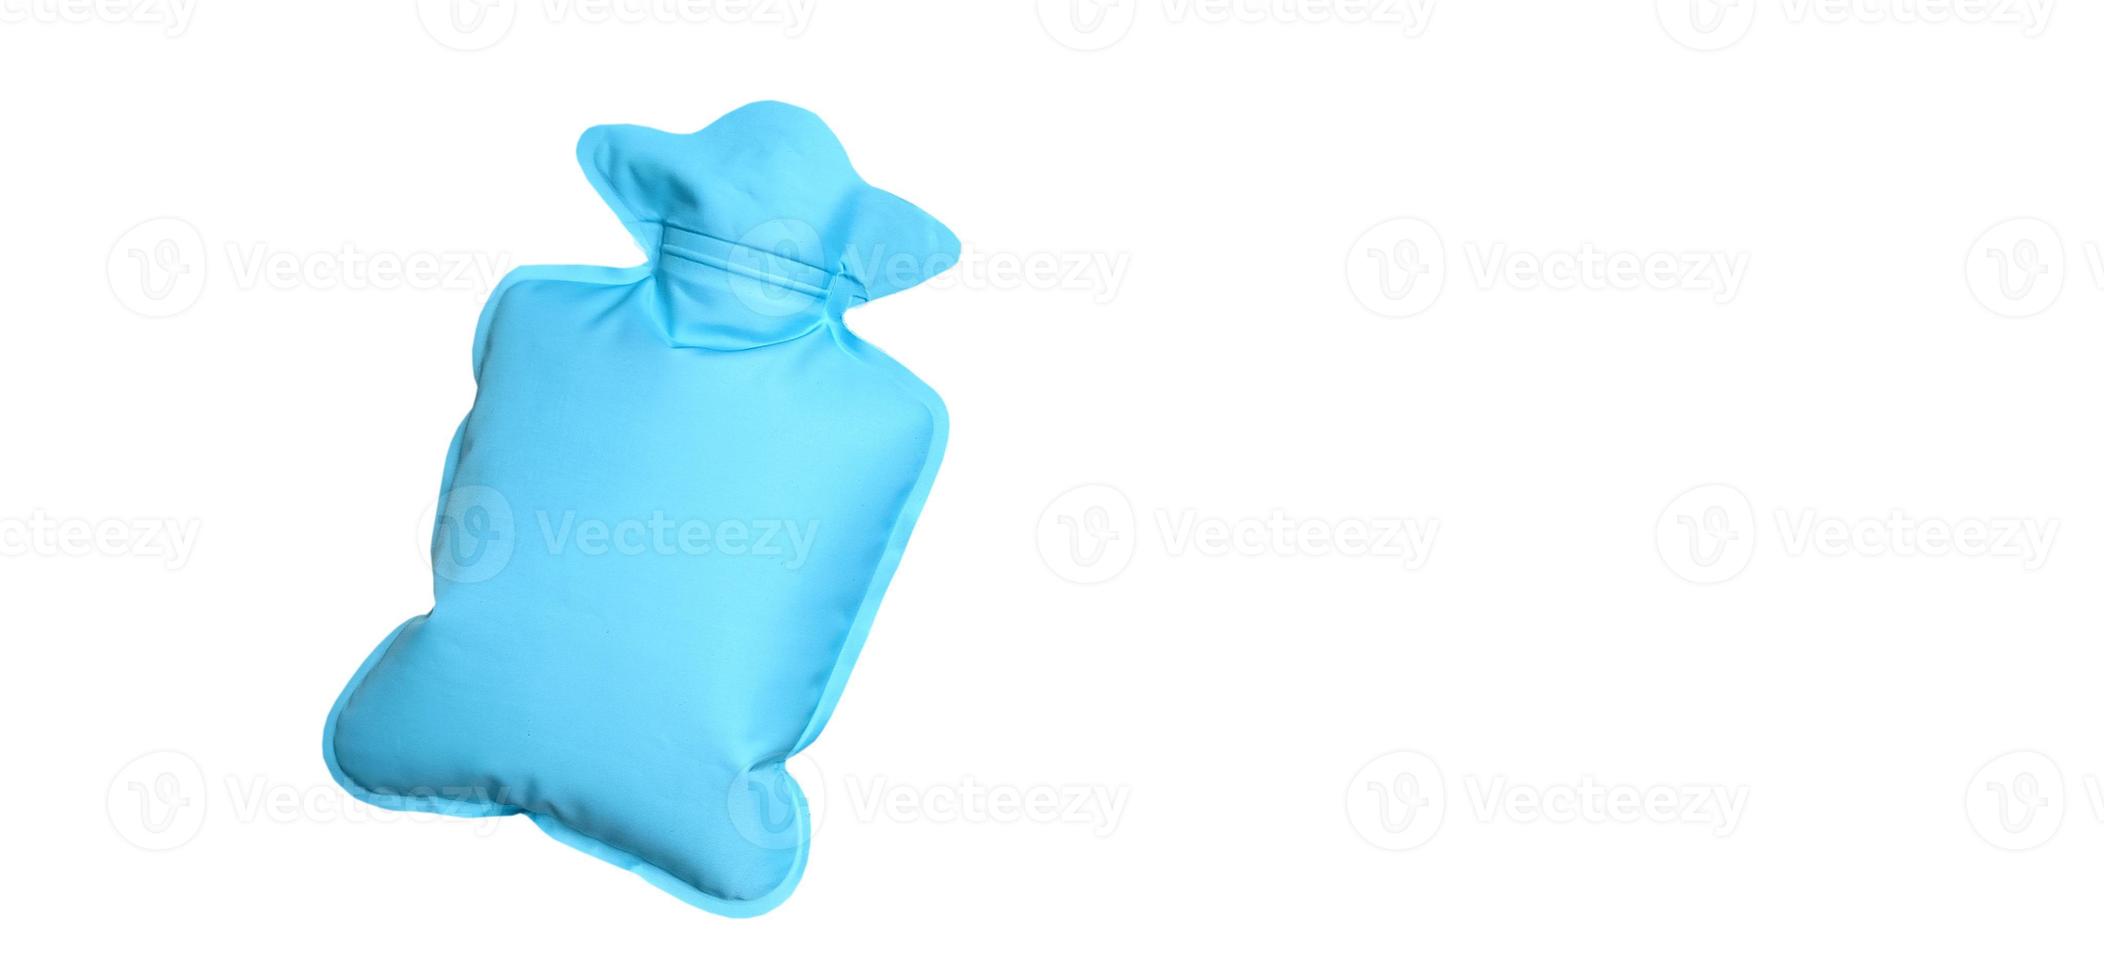 botella o bolsa de agua caliente verde o menta para aliviar el dolor menstrual con espacio de copia sobre fondo blanco foto